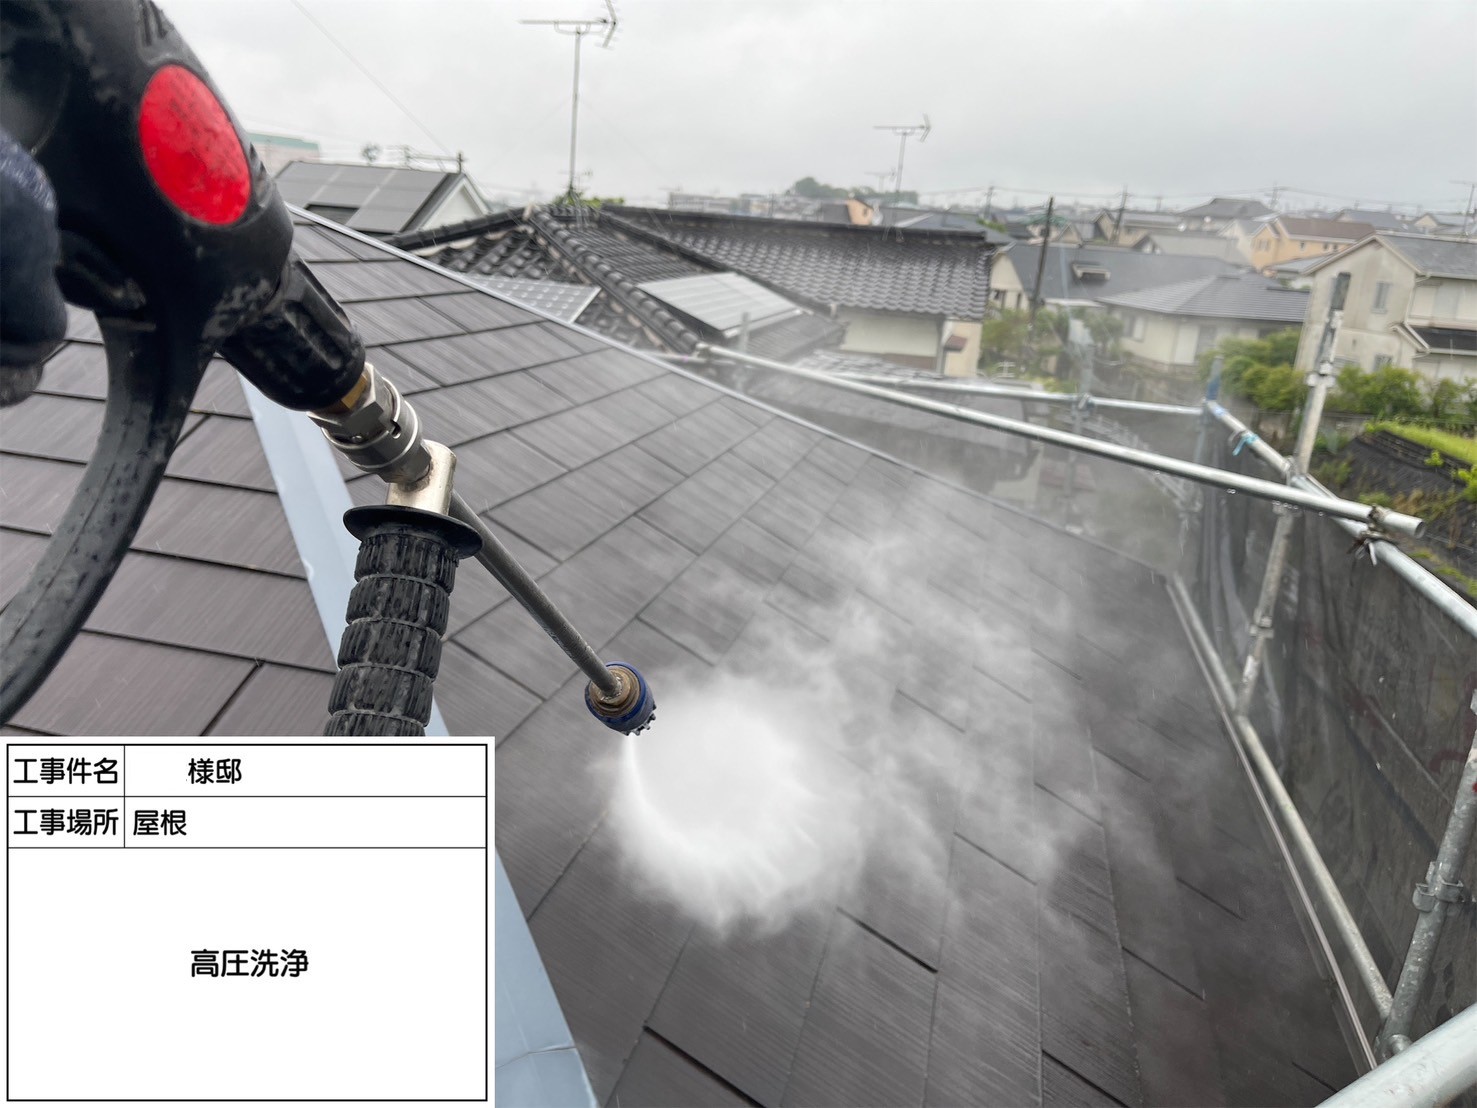 福岡県大野城市南ヶ丘のS様邸で屋根にイーサンクの遮熱エシカルプロクールSI、外壁にプレミアムペイントのピュアピュアシリコンを使用してお住まいの耐久性を向上させる塗り替え工事を行っています。5/30着工です。【HPより】